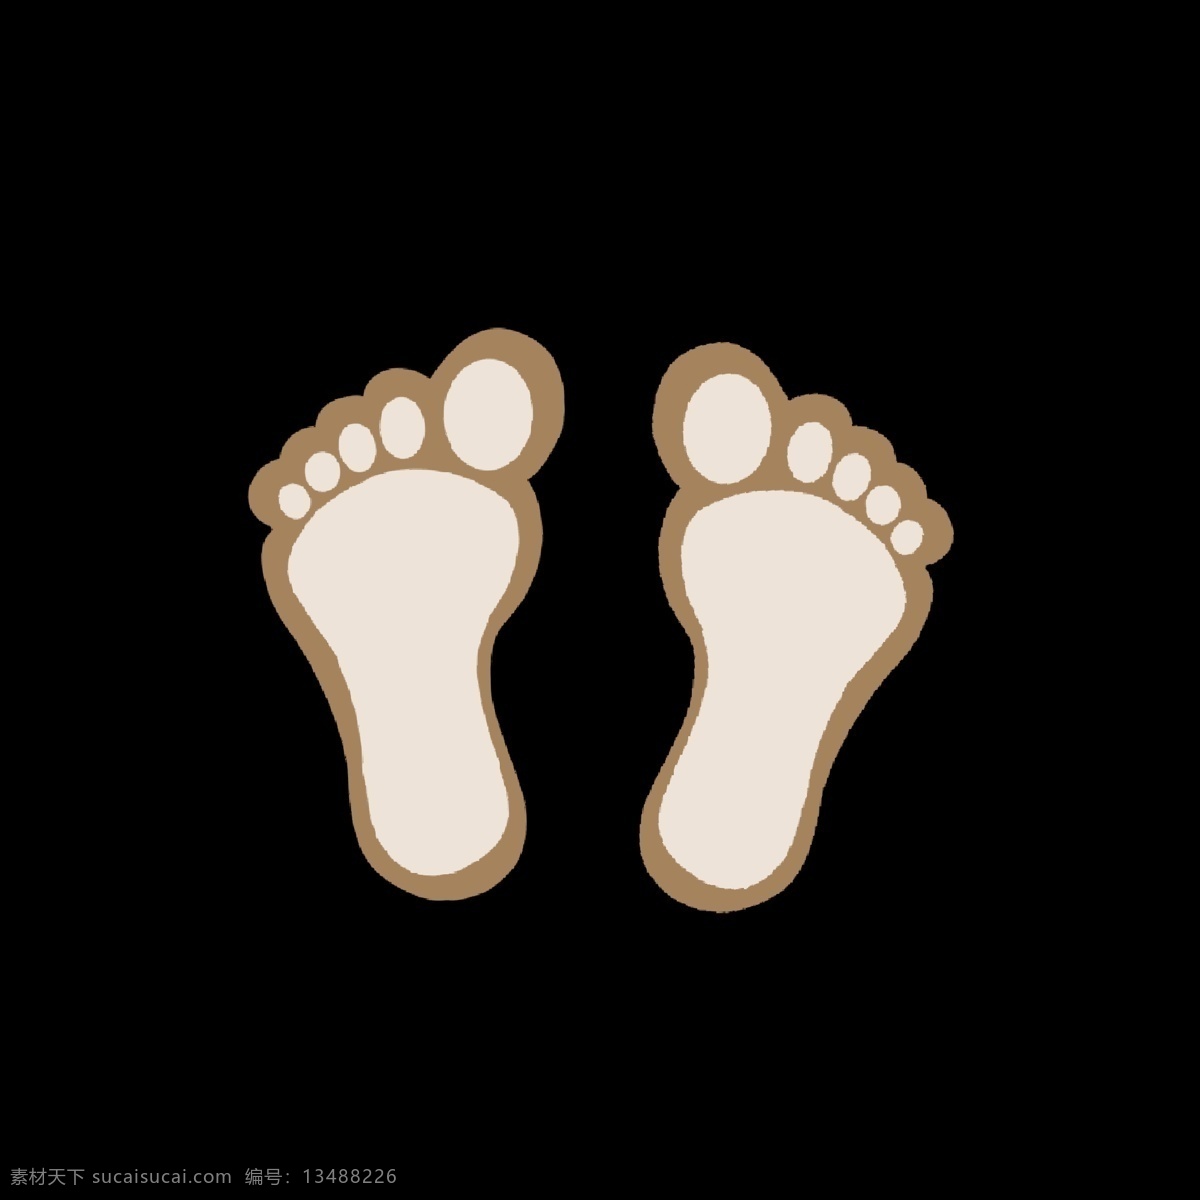 黄色 肉色 小 脚丫 图形 仿真 痕迹 脚印 脚丫子 脚丫形状 卡通 简单 简约 简洁 人物脚 几何形状